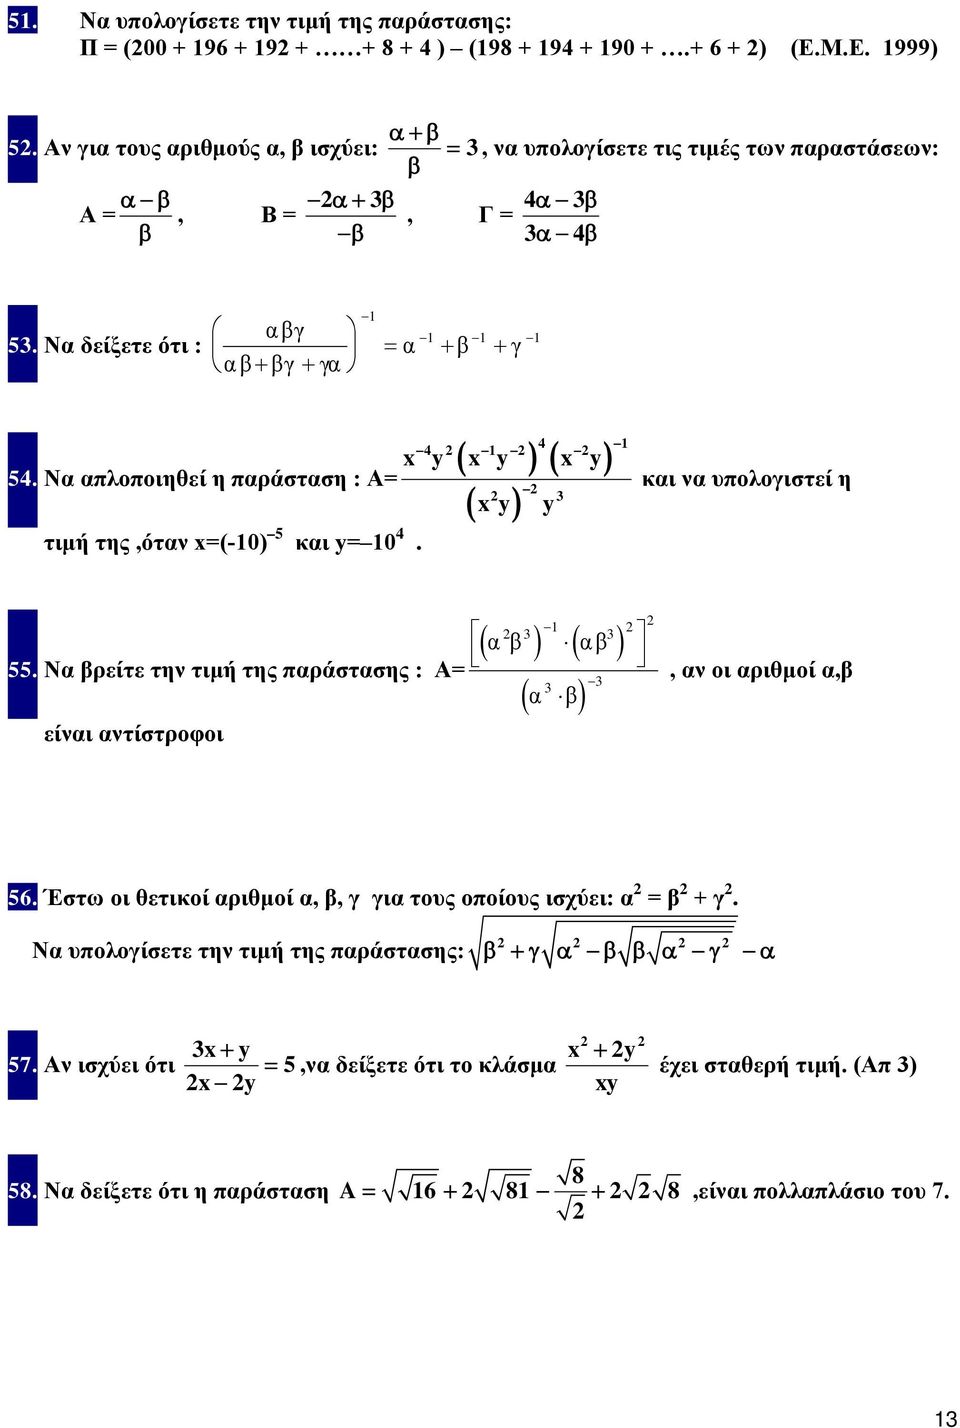 Να απλοποιηθεί η παράσταση : A= και να υπολογιστεί η x y y τιμή της,όταν x=(-0) και y= 0. α β.